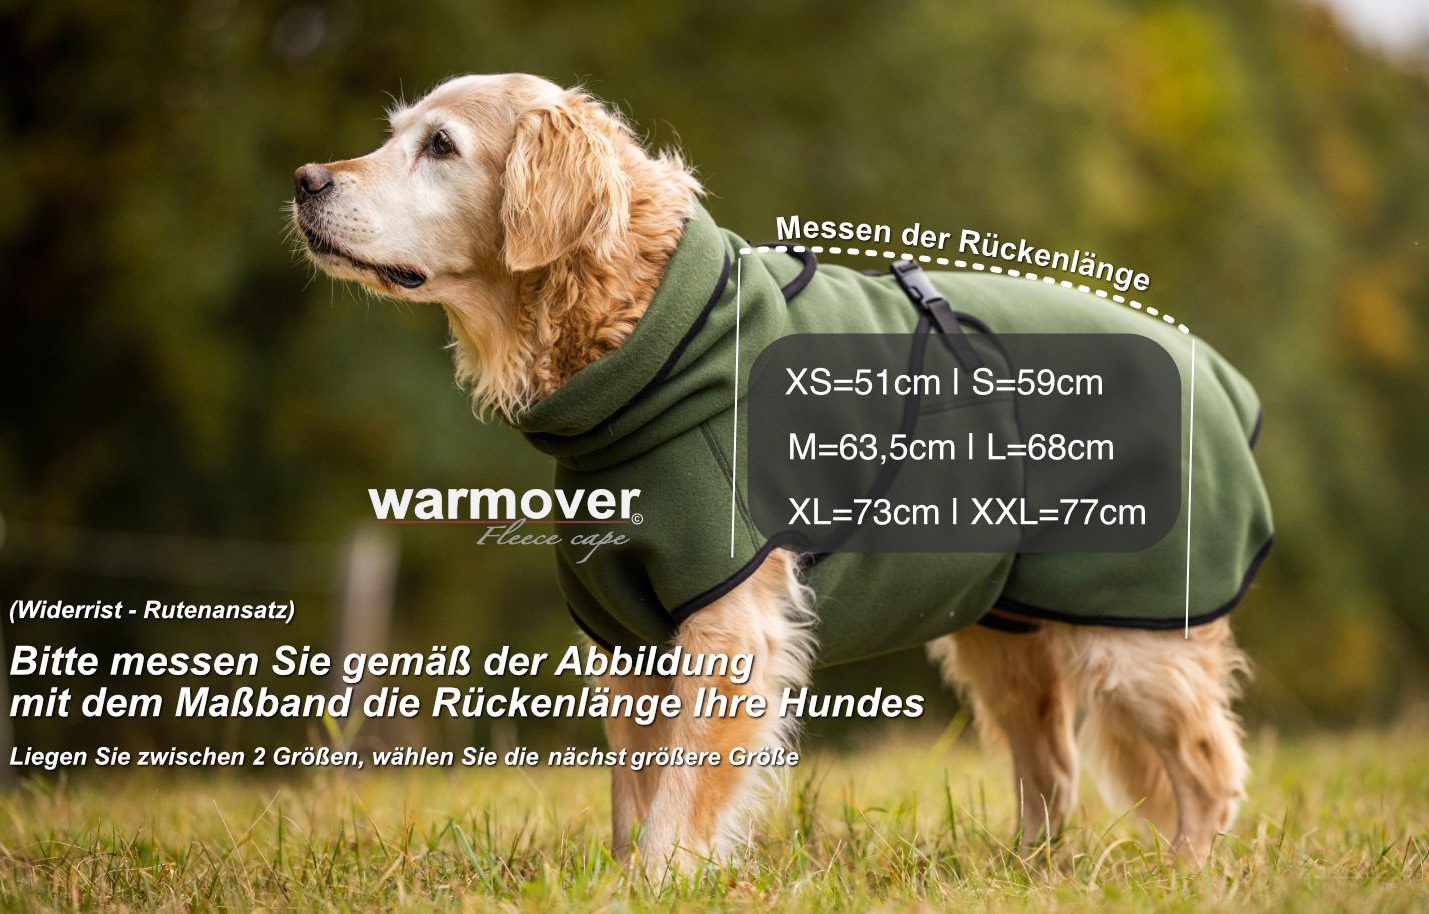 Hund mit Actionfactory-Warmover-Fleece-Mantel und Maßband-Markierung, diese ist zwischen Widerrist und Routenansatz - so wird die richtige Größe ermittelt.